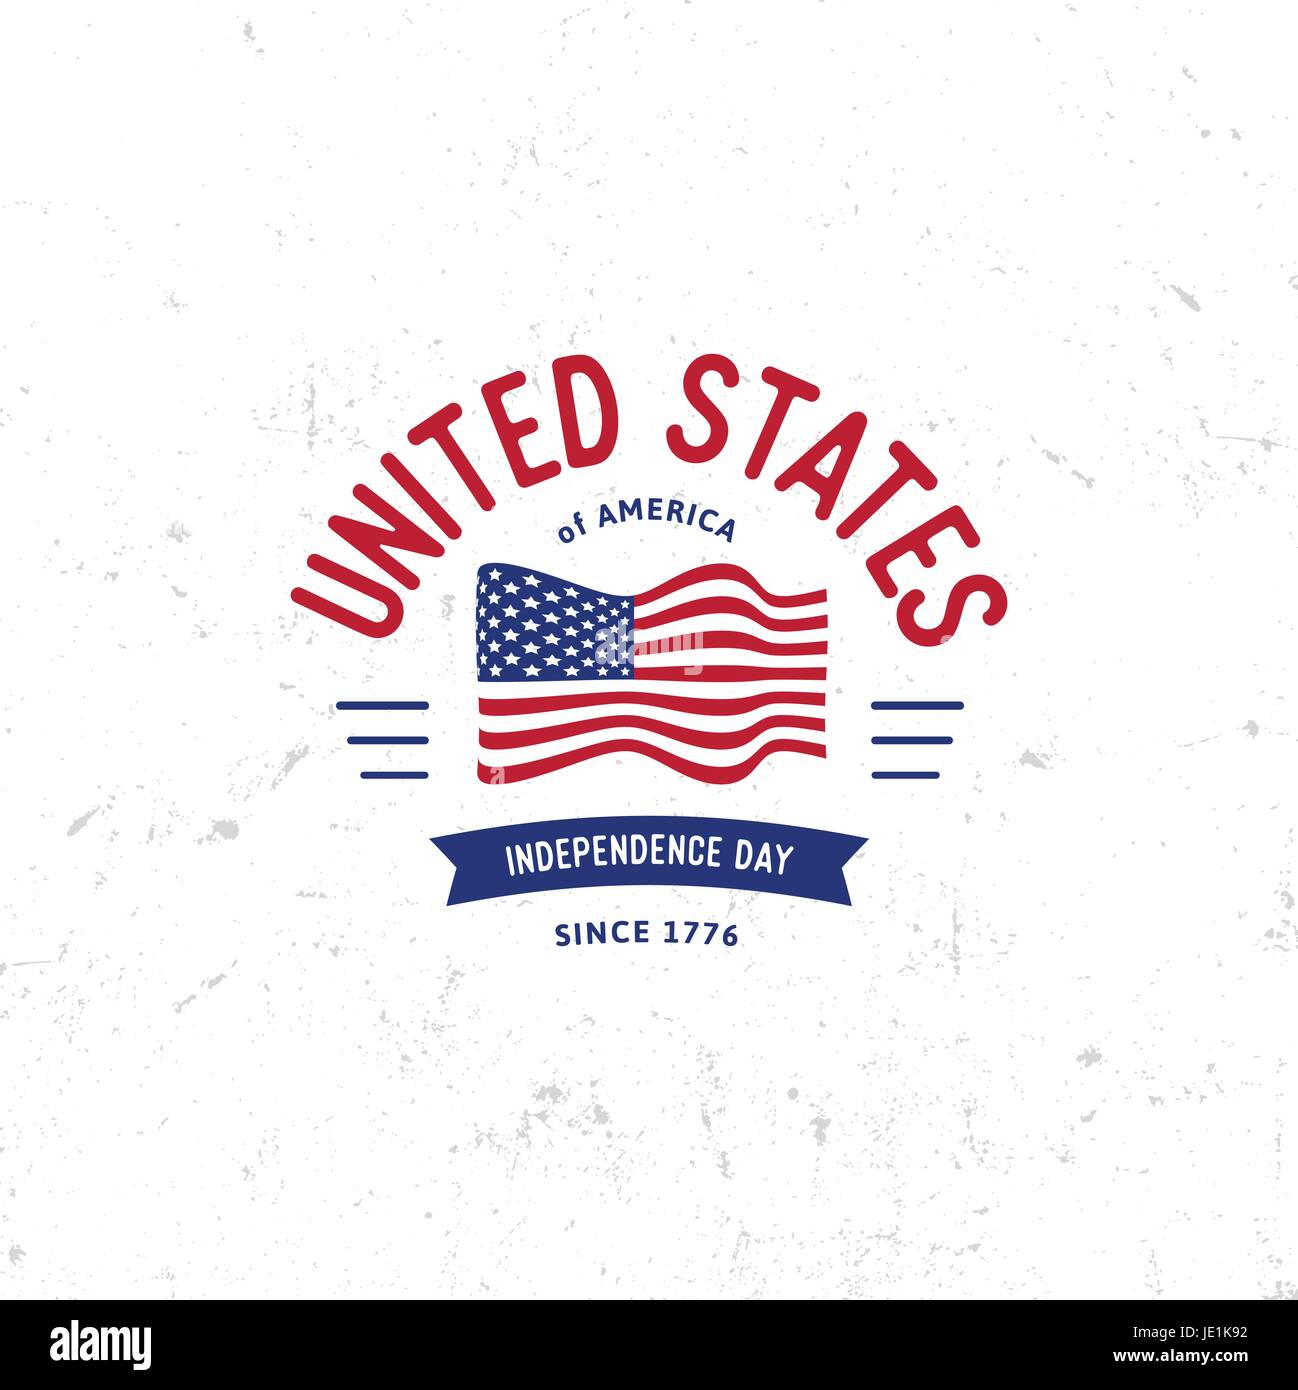 Etats-unis d'Amérique du Nord logo Vector Vintage style simple. Date de l'indépendance Fête de l'icône. Couleurs bleu et rouge USA drapeau venteux. Retro sty Illustration de Vecteur